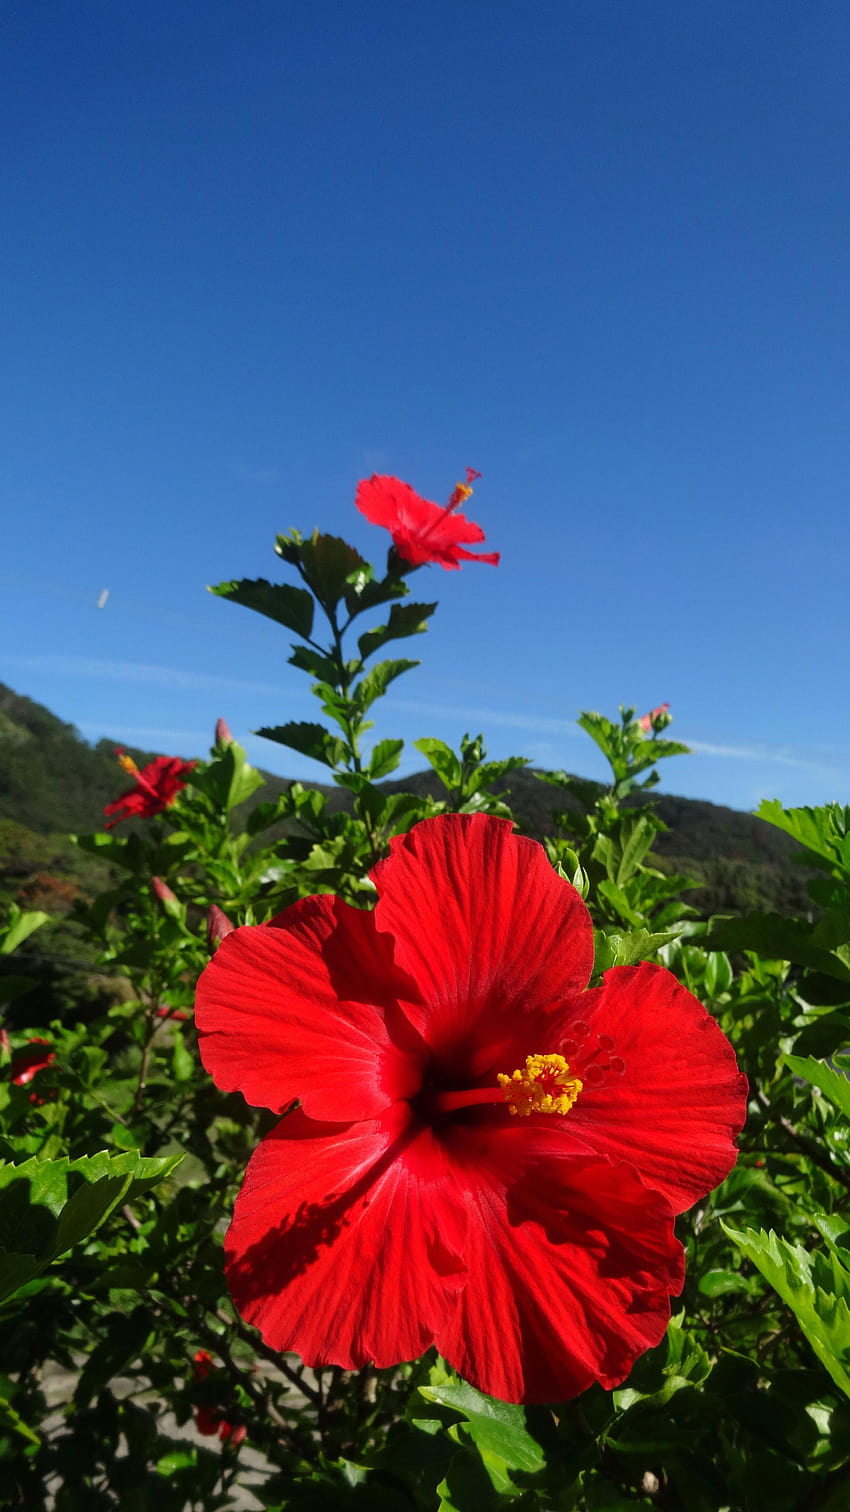 ebegümeci çiçeği botanik adı 2020, kırmızı ebegümeci çiçeği HD telefon duvar kağıdı